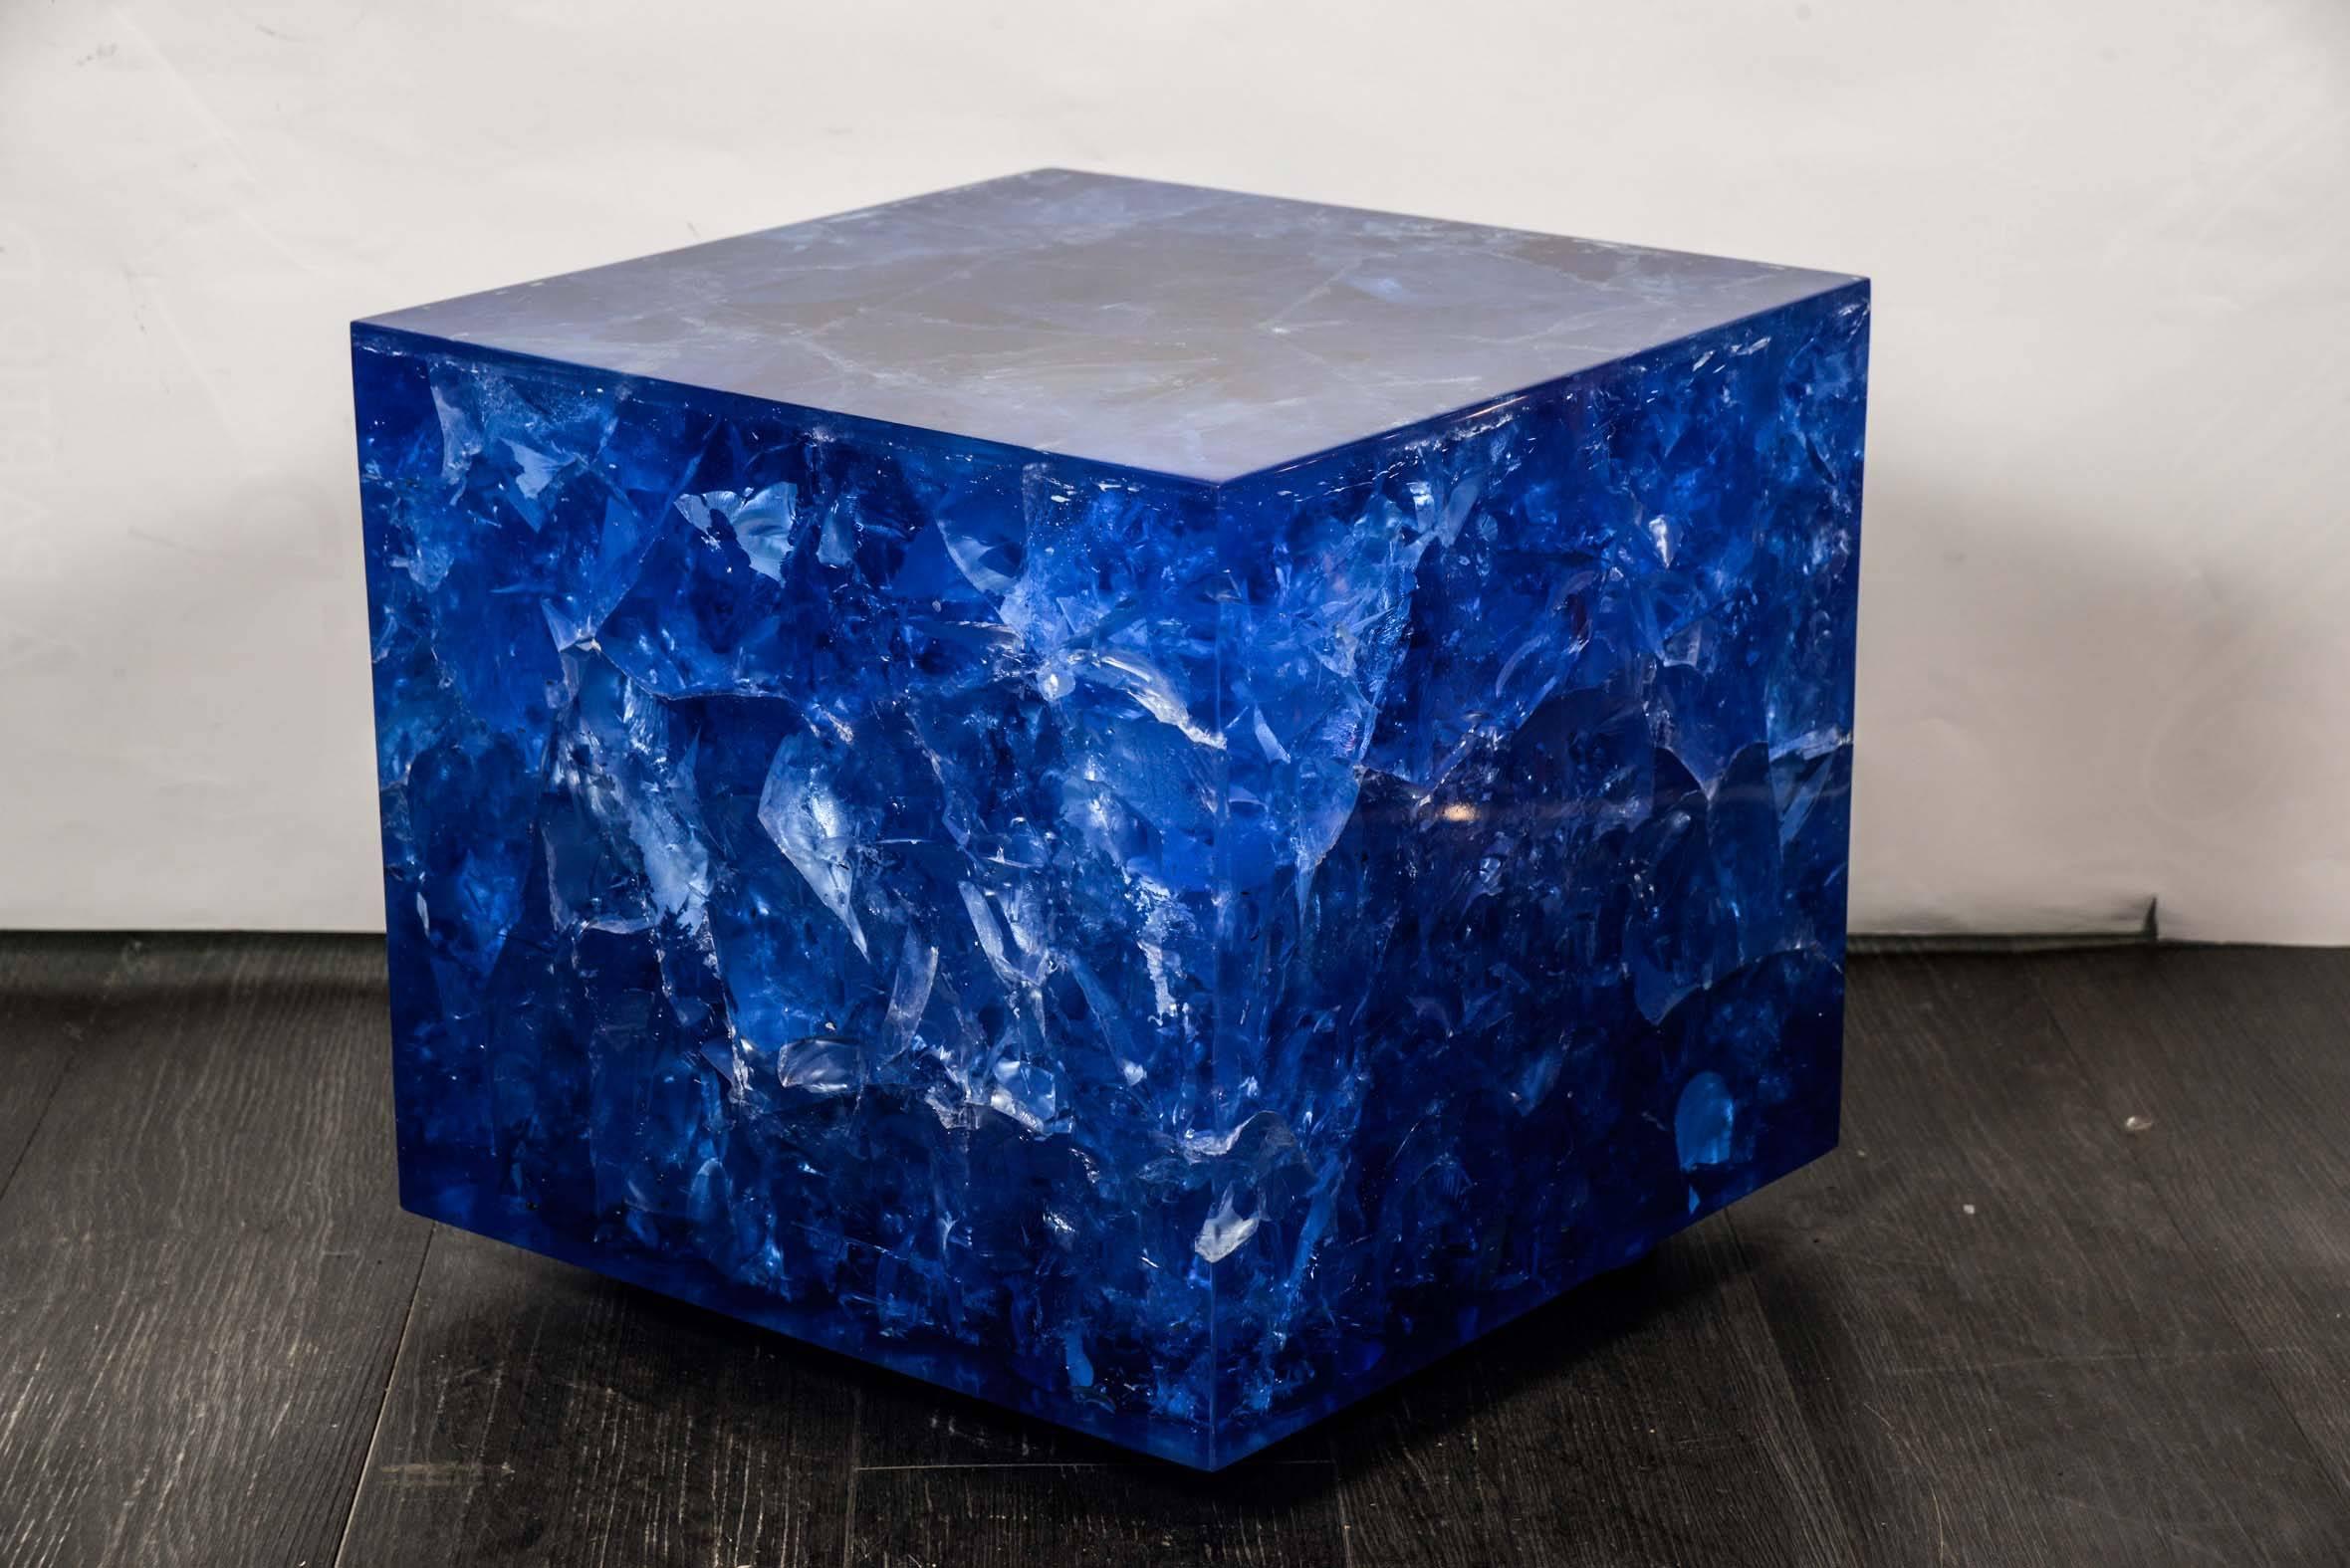 Beistelltische aus Crushed-Ice-Harz von Franco Gavagni für die Galerie Régis Royant.
Die Qualität ist erstaunlich, aber es ist besser, sie mit einem Glas zu schützen.
Das Gewicht beträgt jeweils 60 Kilo.
Auflage von acht Stück in jeder Farbe.